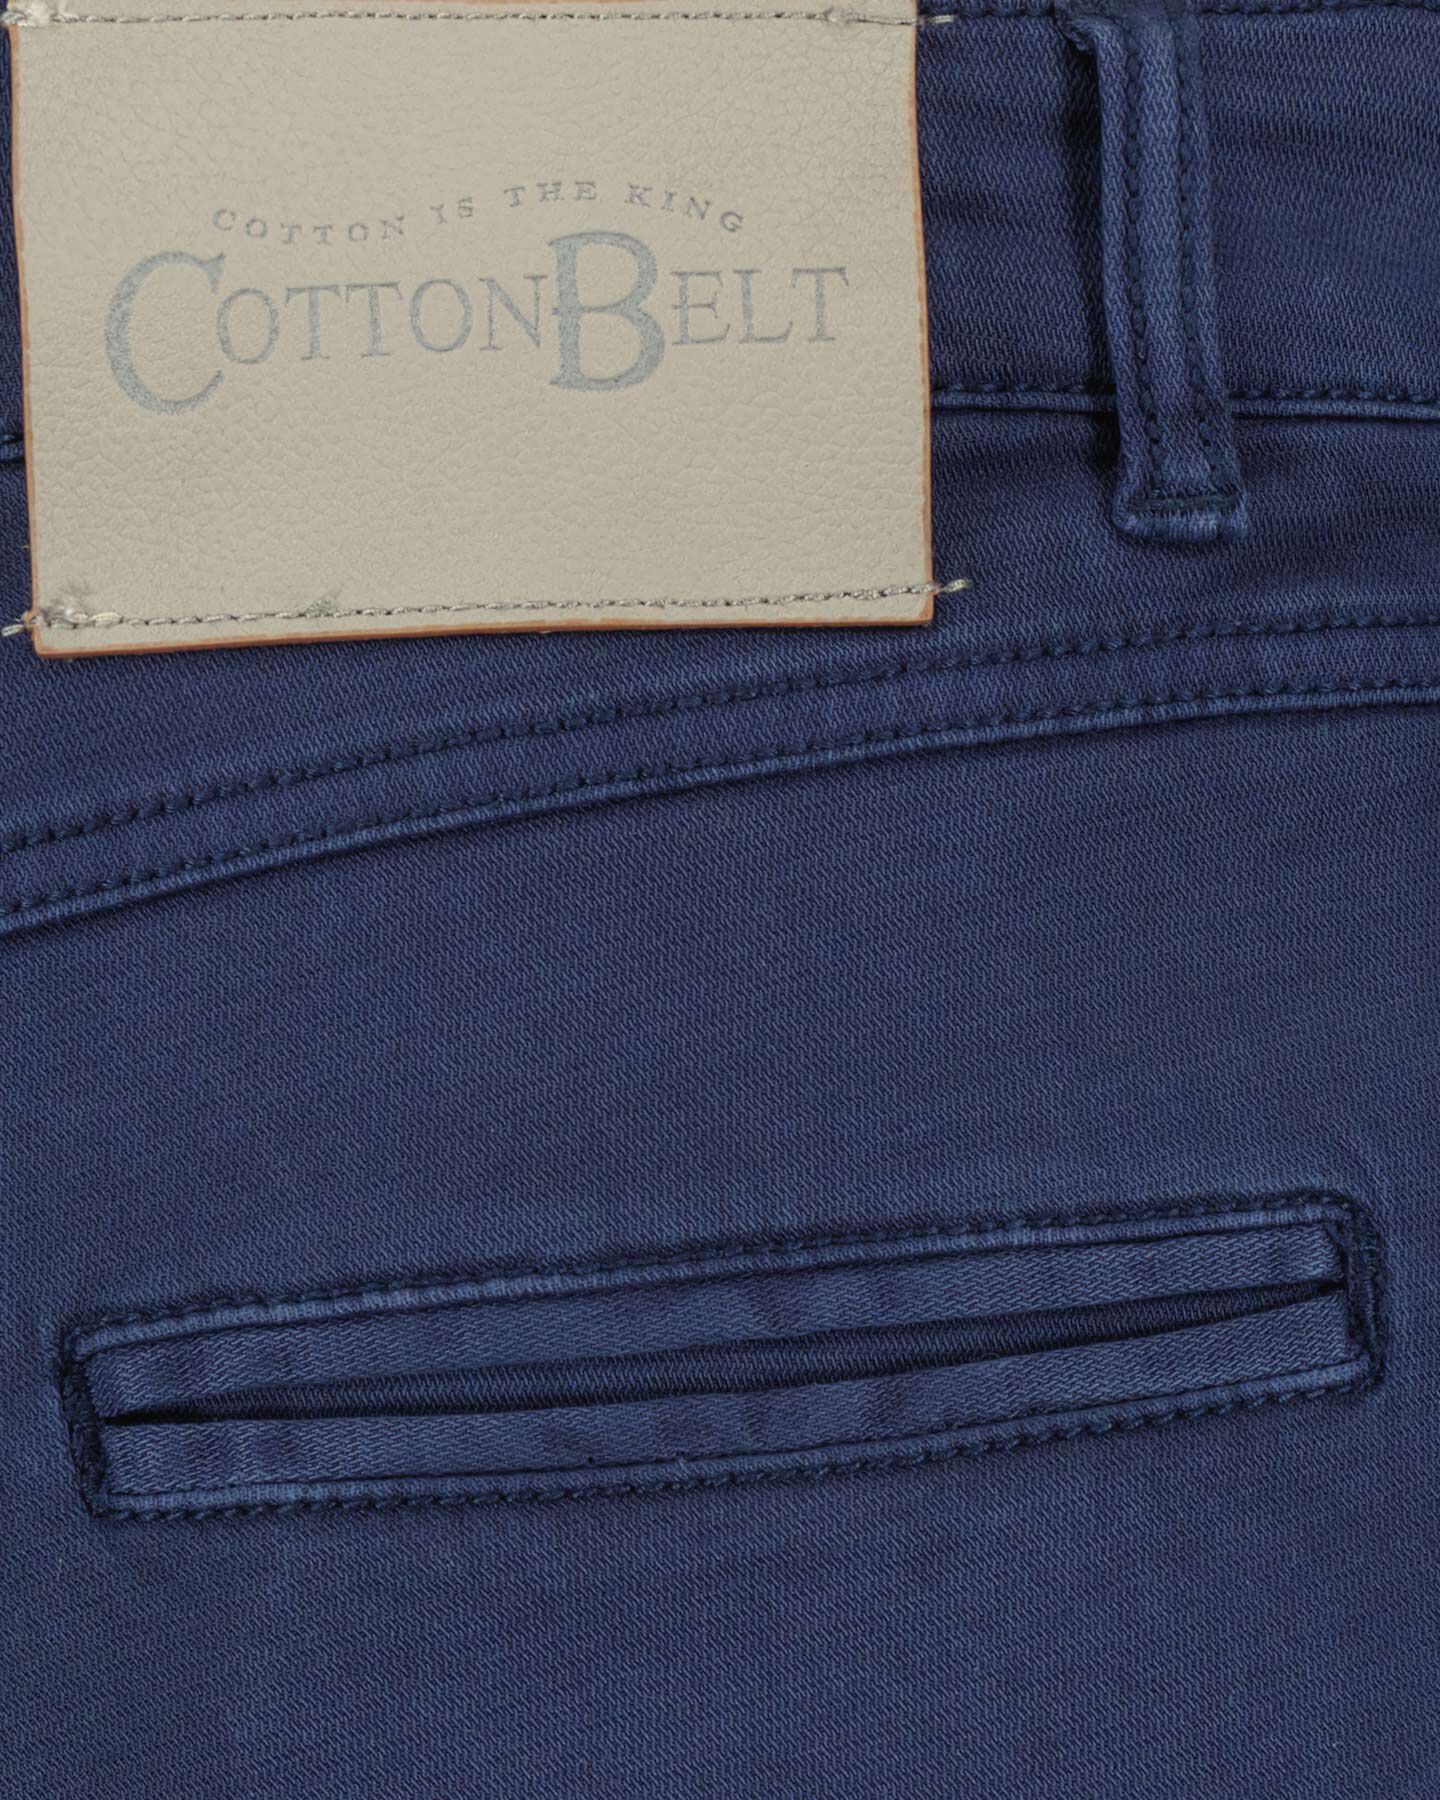  Pantalone COTTON BELT CHINO M S4115862|518|30 scatto 4